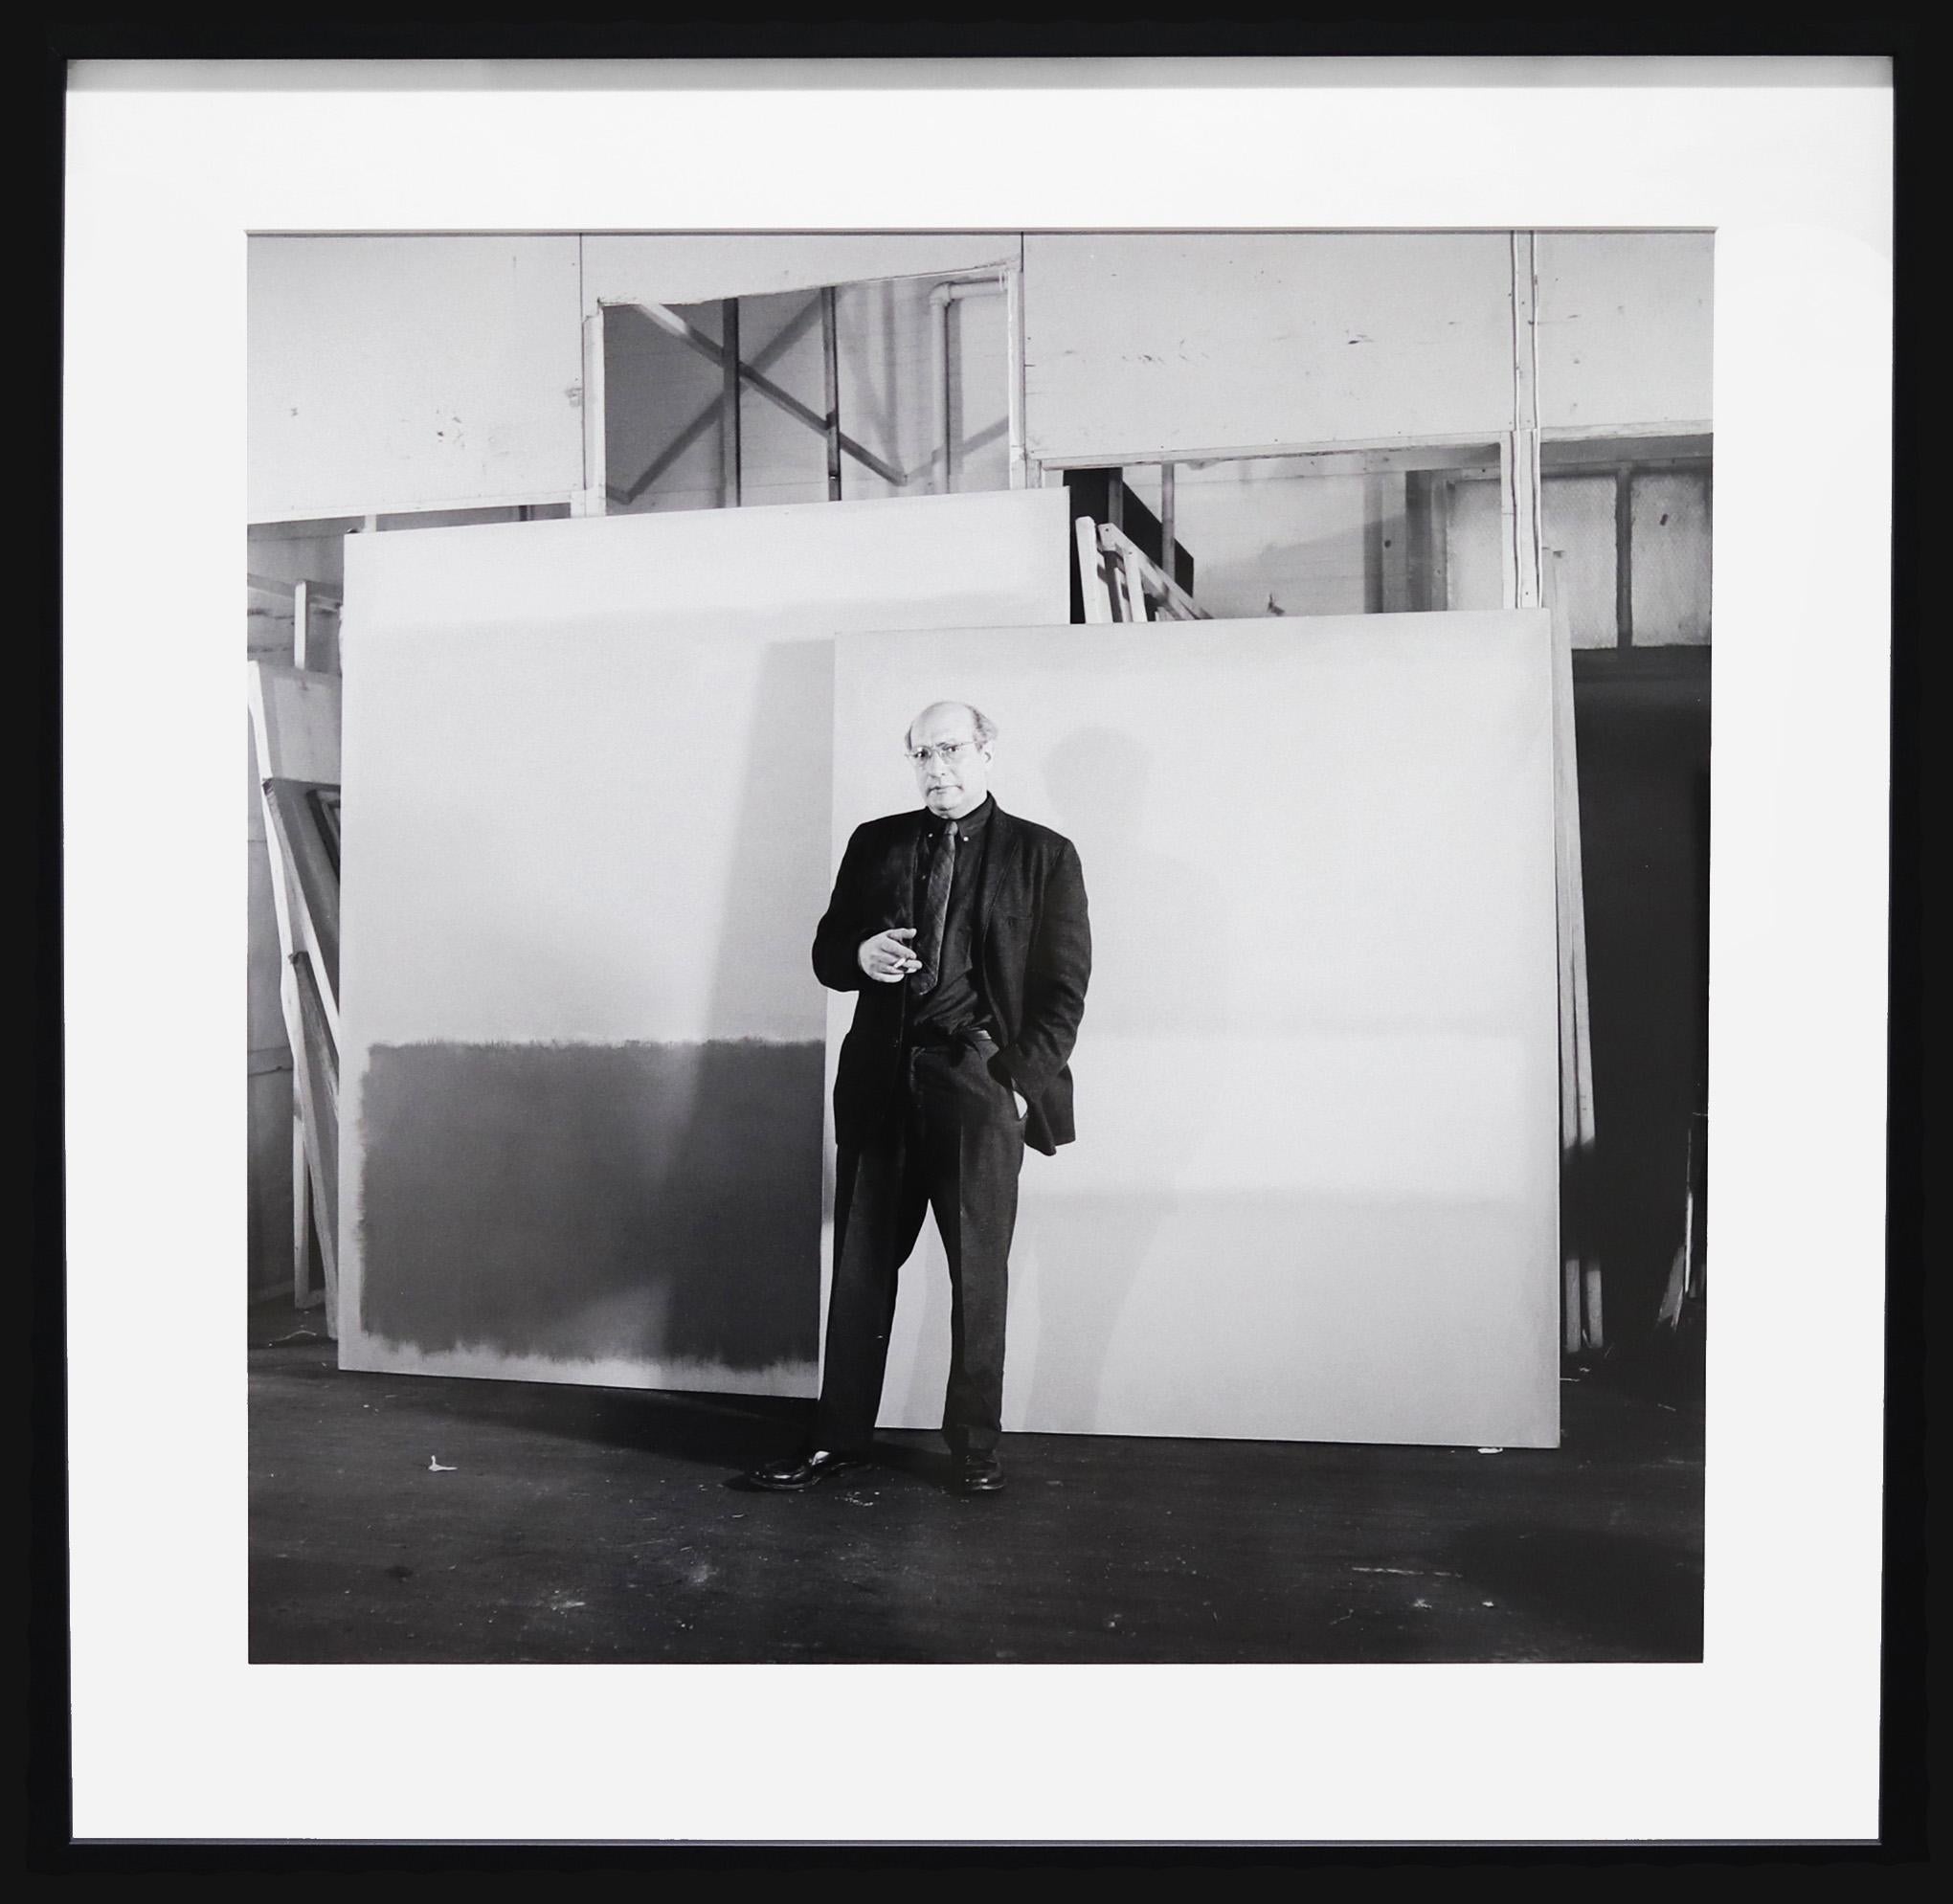 Ben Martin Black and White Photograph – Mark Rothko 1961 - Ikonische abstrakt-expressionistische Künstlerfotografie